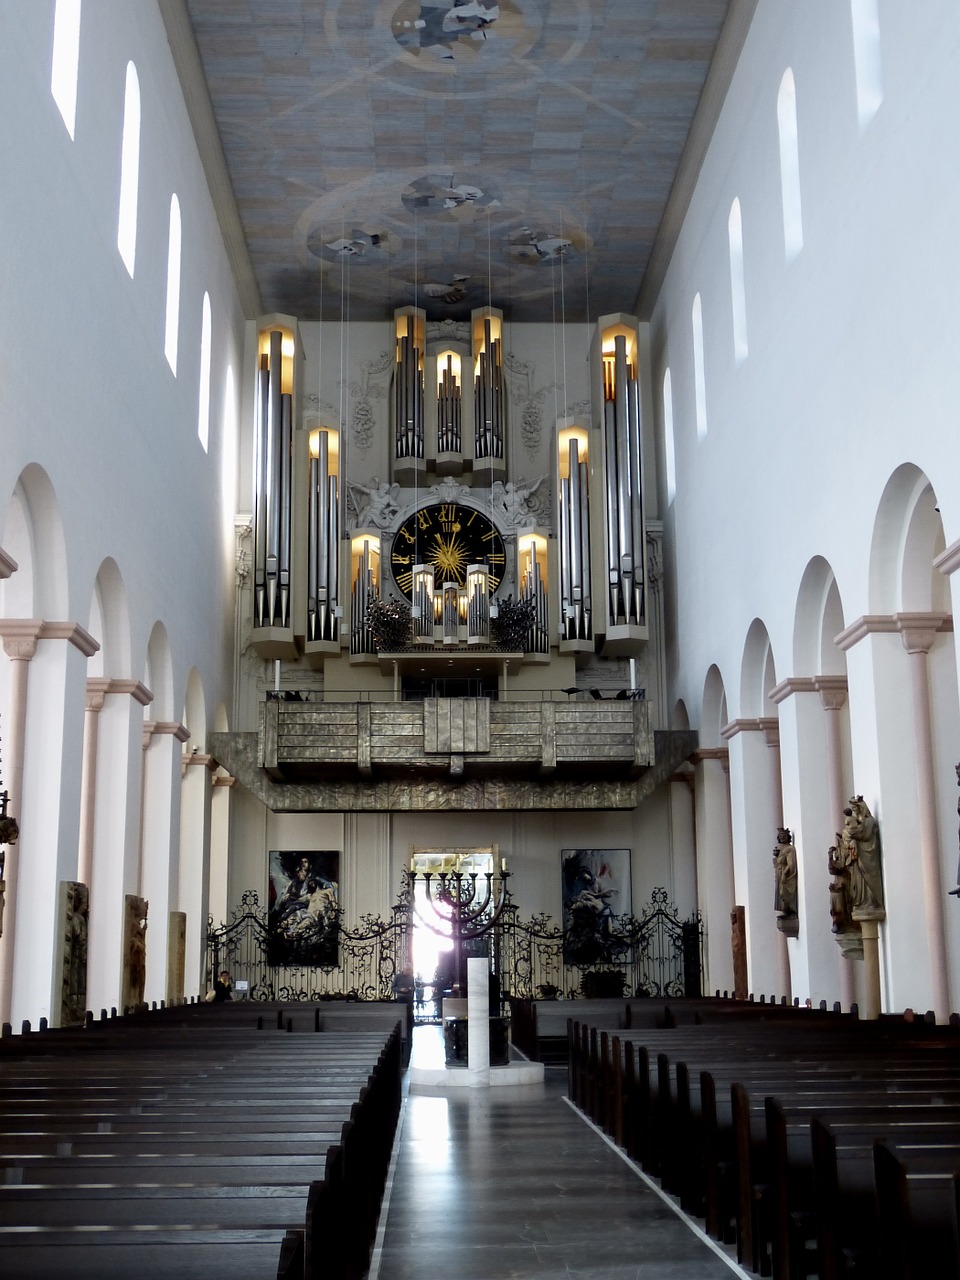 Dom, St Kilianas, Bažnyčia, Istoriškai, Architektūra, Tikėk, Krikščionybė, Würzburg, Bavarija, Organas